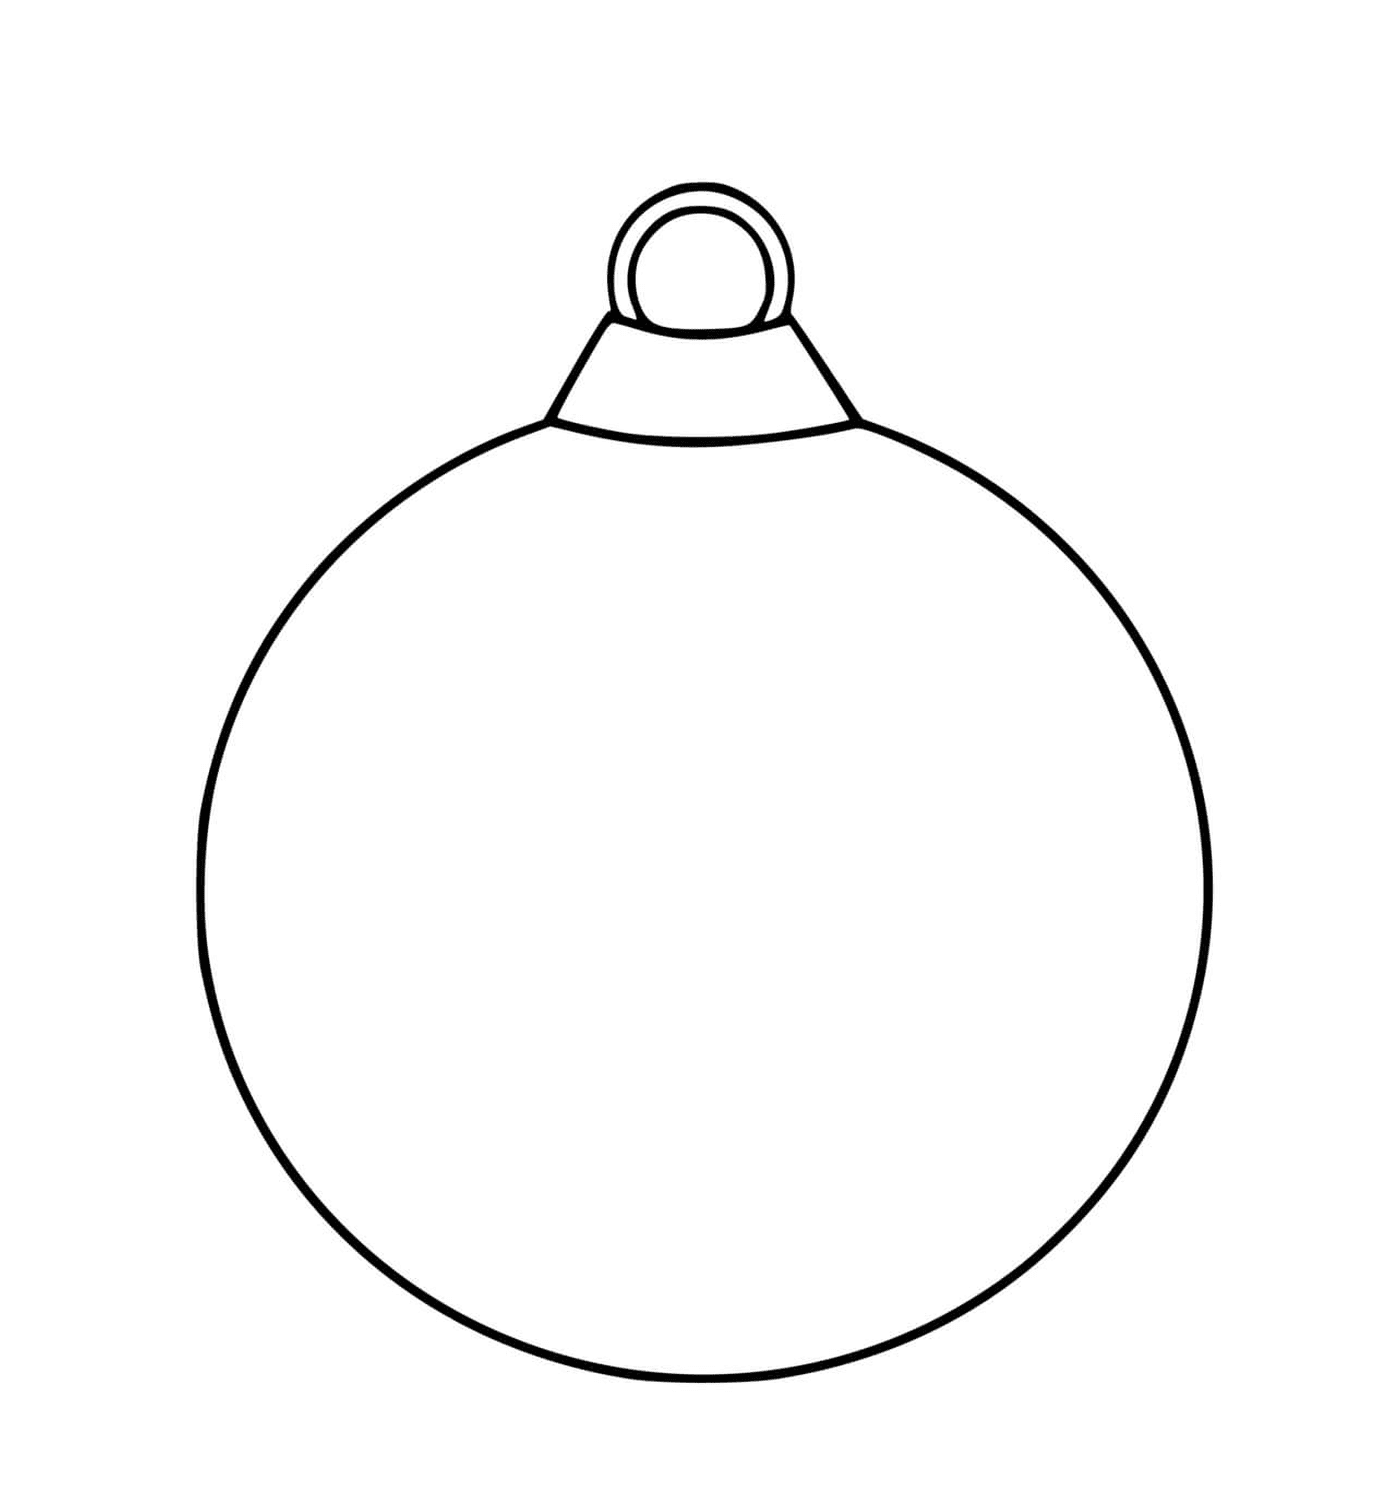  Ein leerer Weihnachtsball mit einem einfachen schwarzen Umriss 